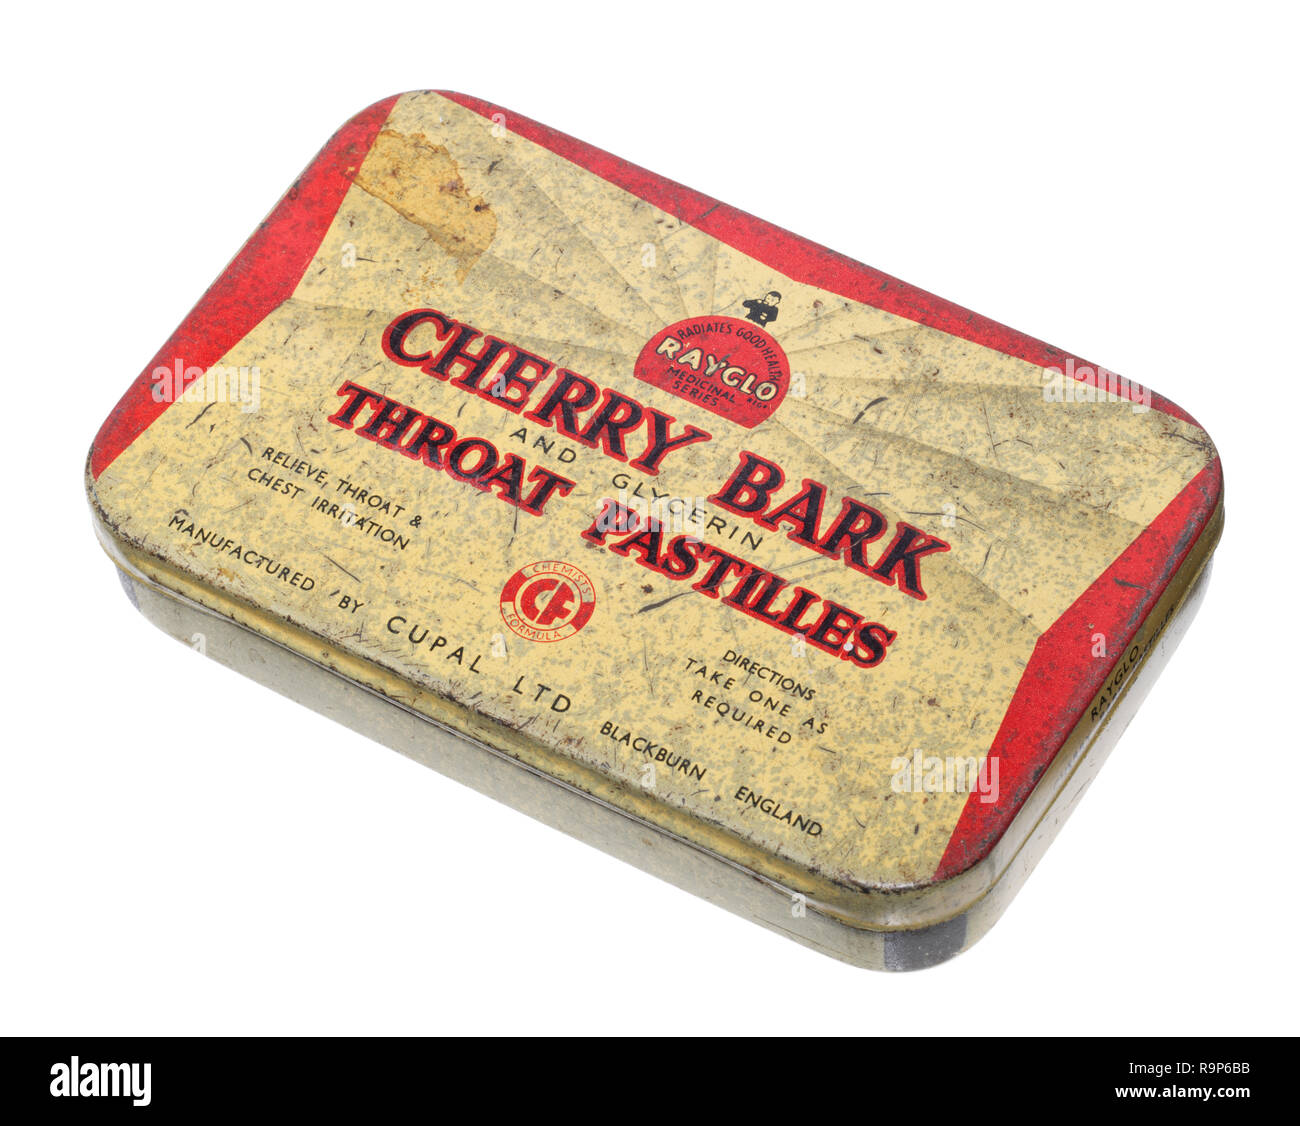 Cherry bark throat pastilles tin. Stock Photo